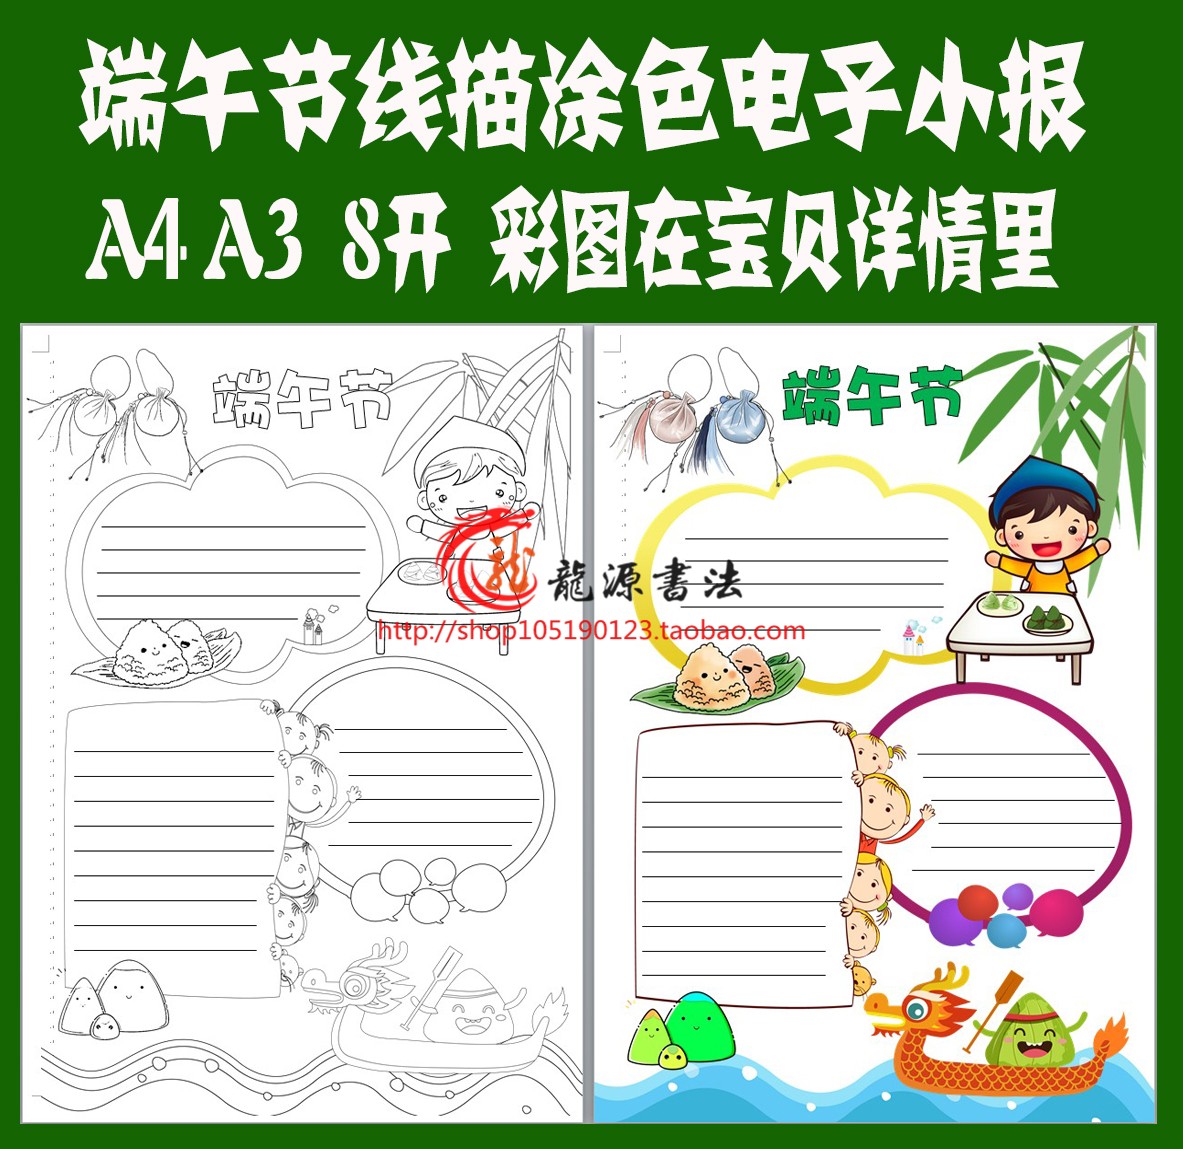 端午节端阳粽子节五月节传统节日手抄报电子小报手工线描涂色模板